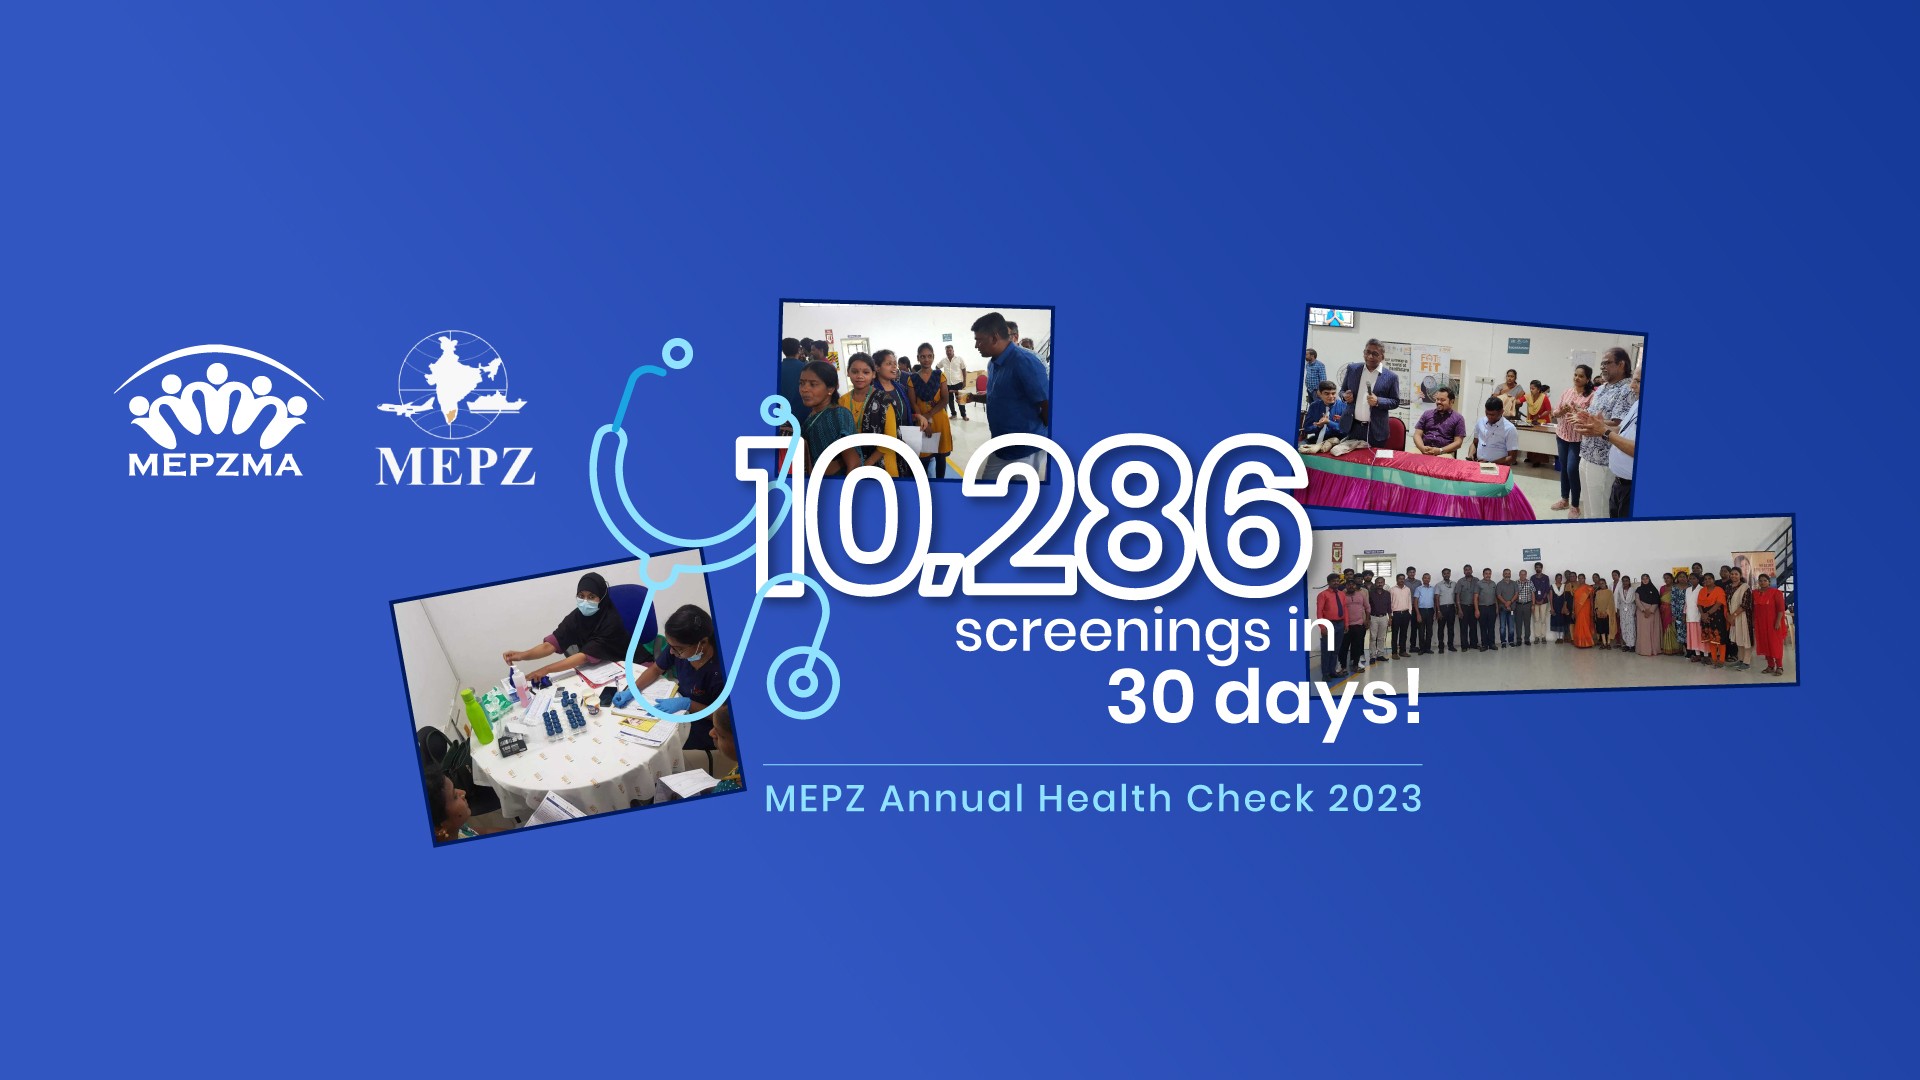 MEPZ Annual Health Check 2023